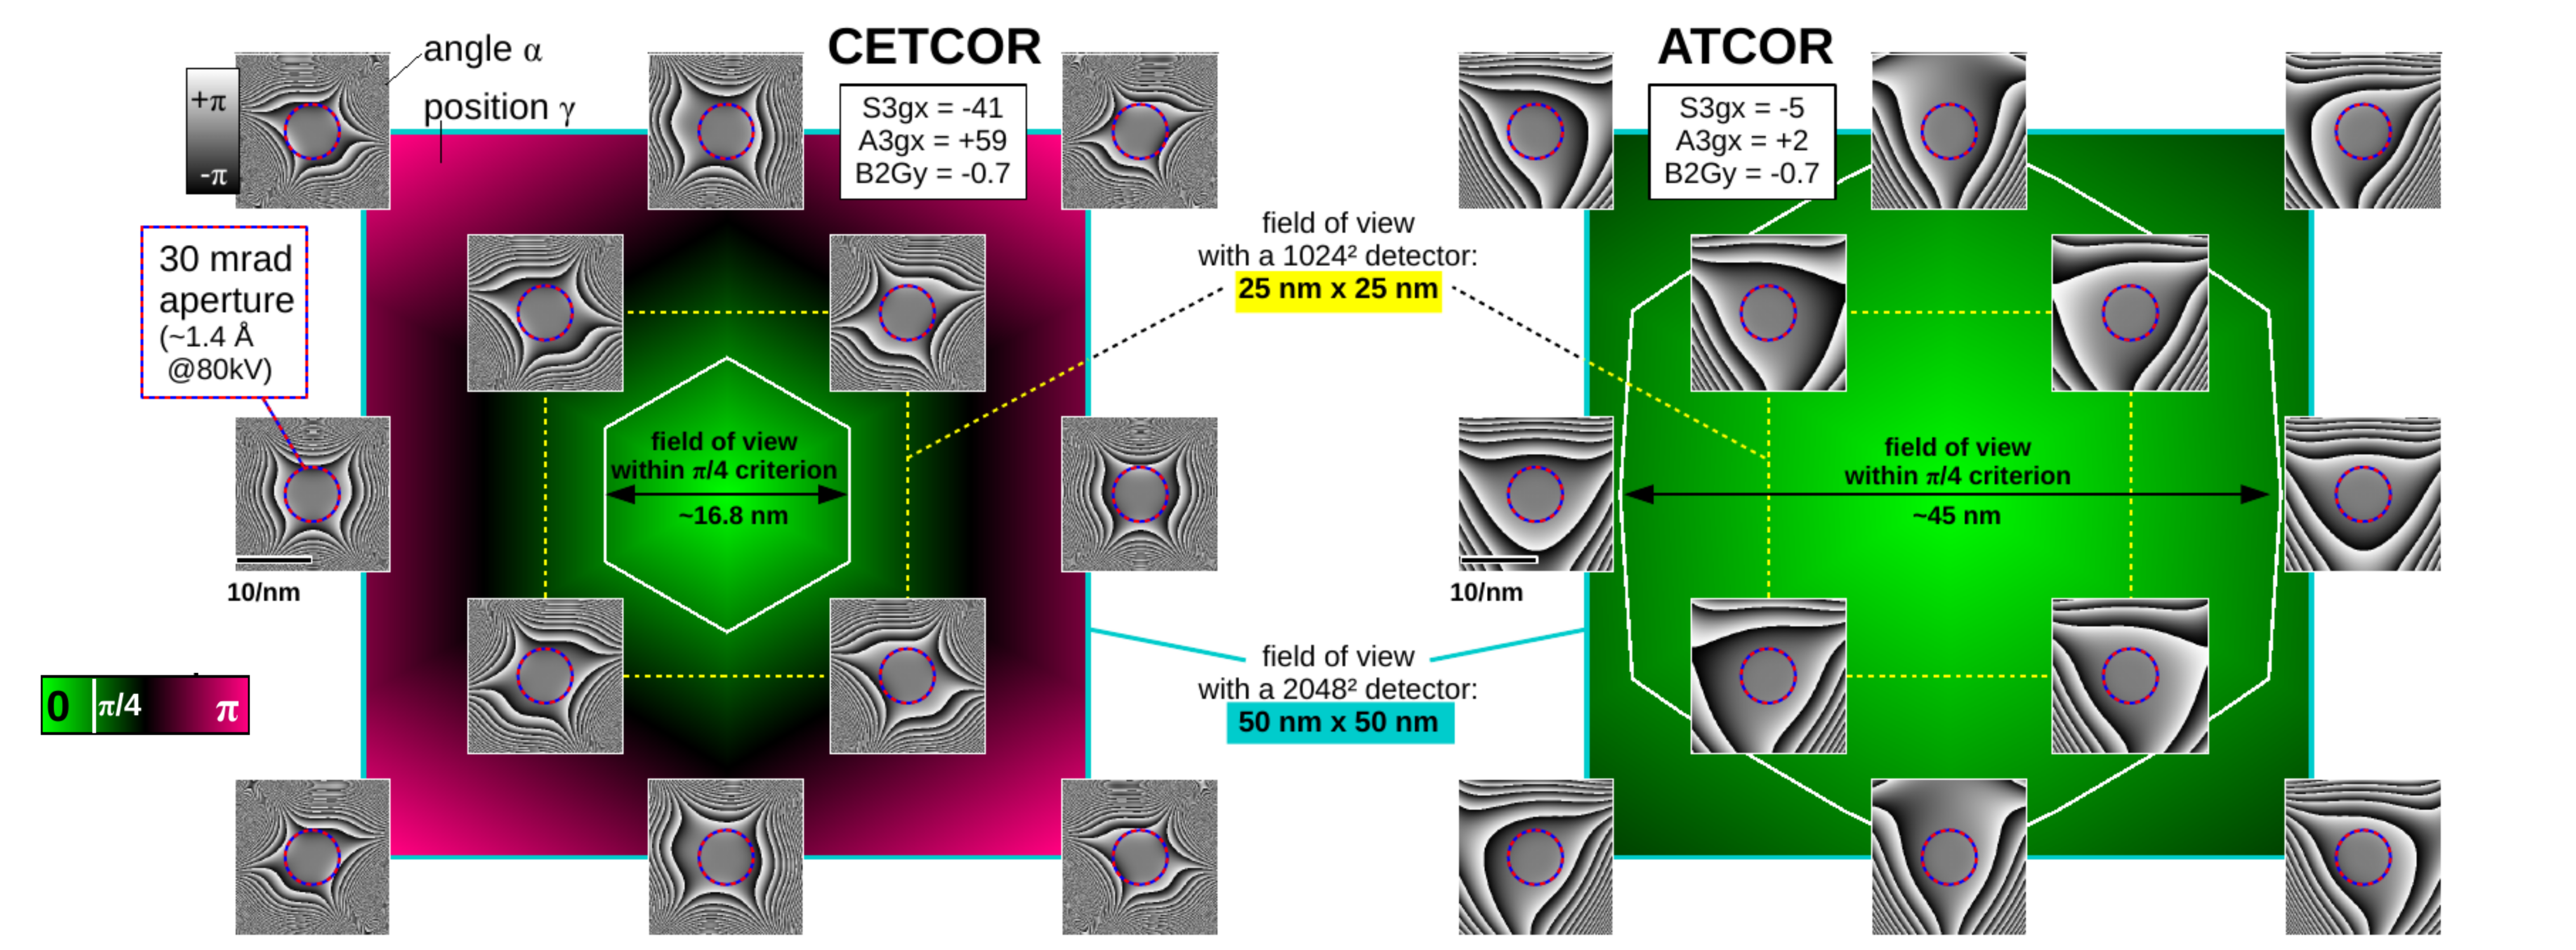 Vergleich_Korr_Bildfeldbereich_CETCOR_ATCOR